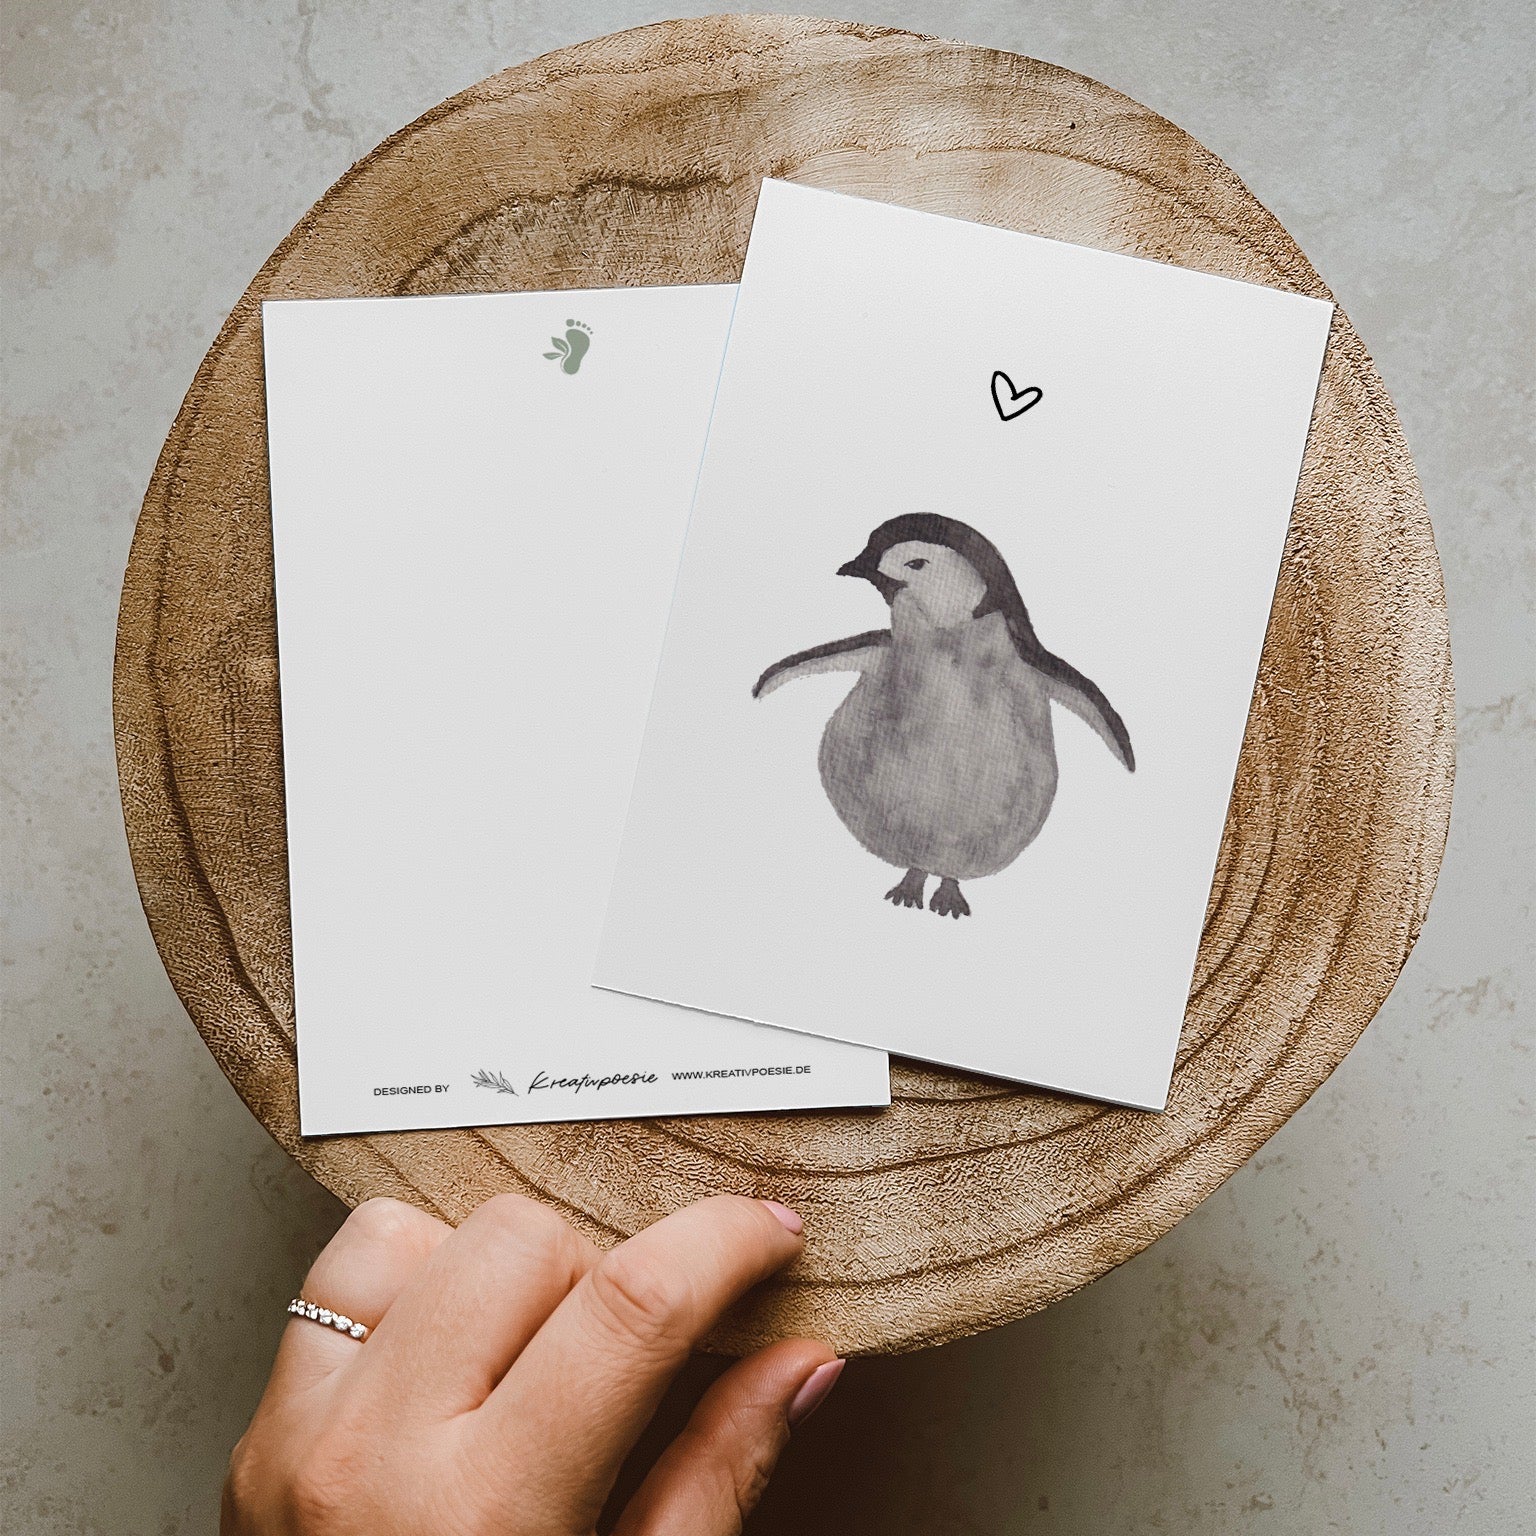 Grau schwarzer Pinguin mit abstehenden Flügeln, nach links schauend mit einem Herz über ihm. Gedruckt auf Recyclingpapier in Deutschland.